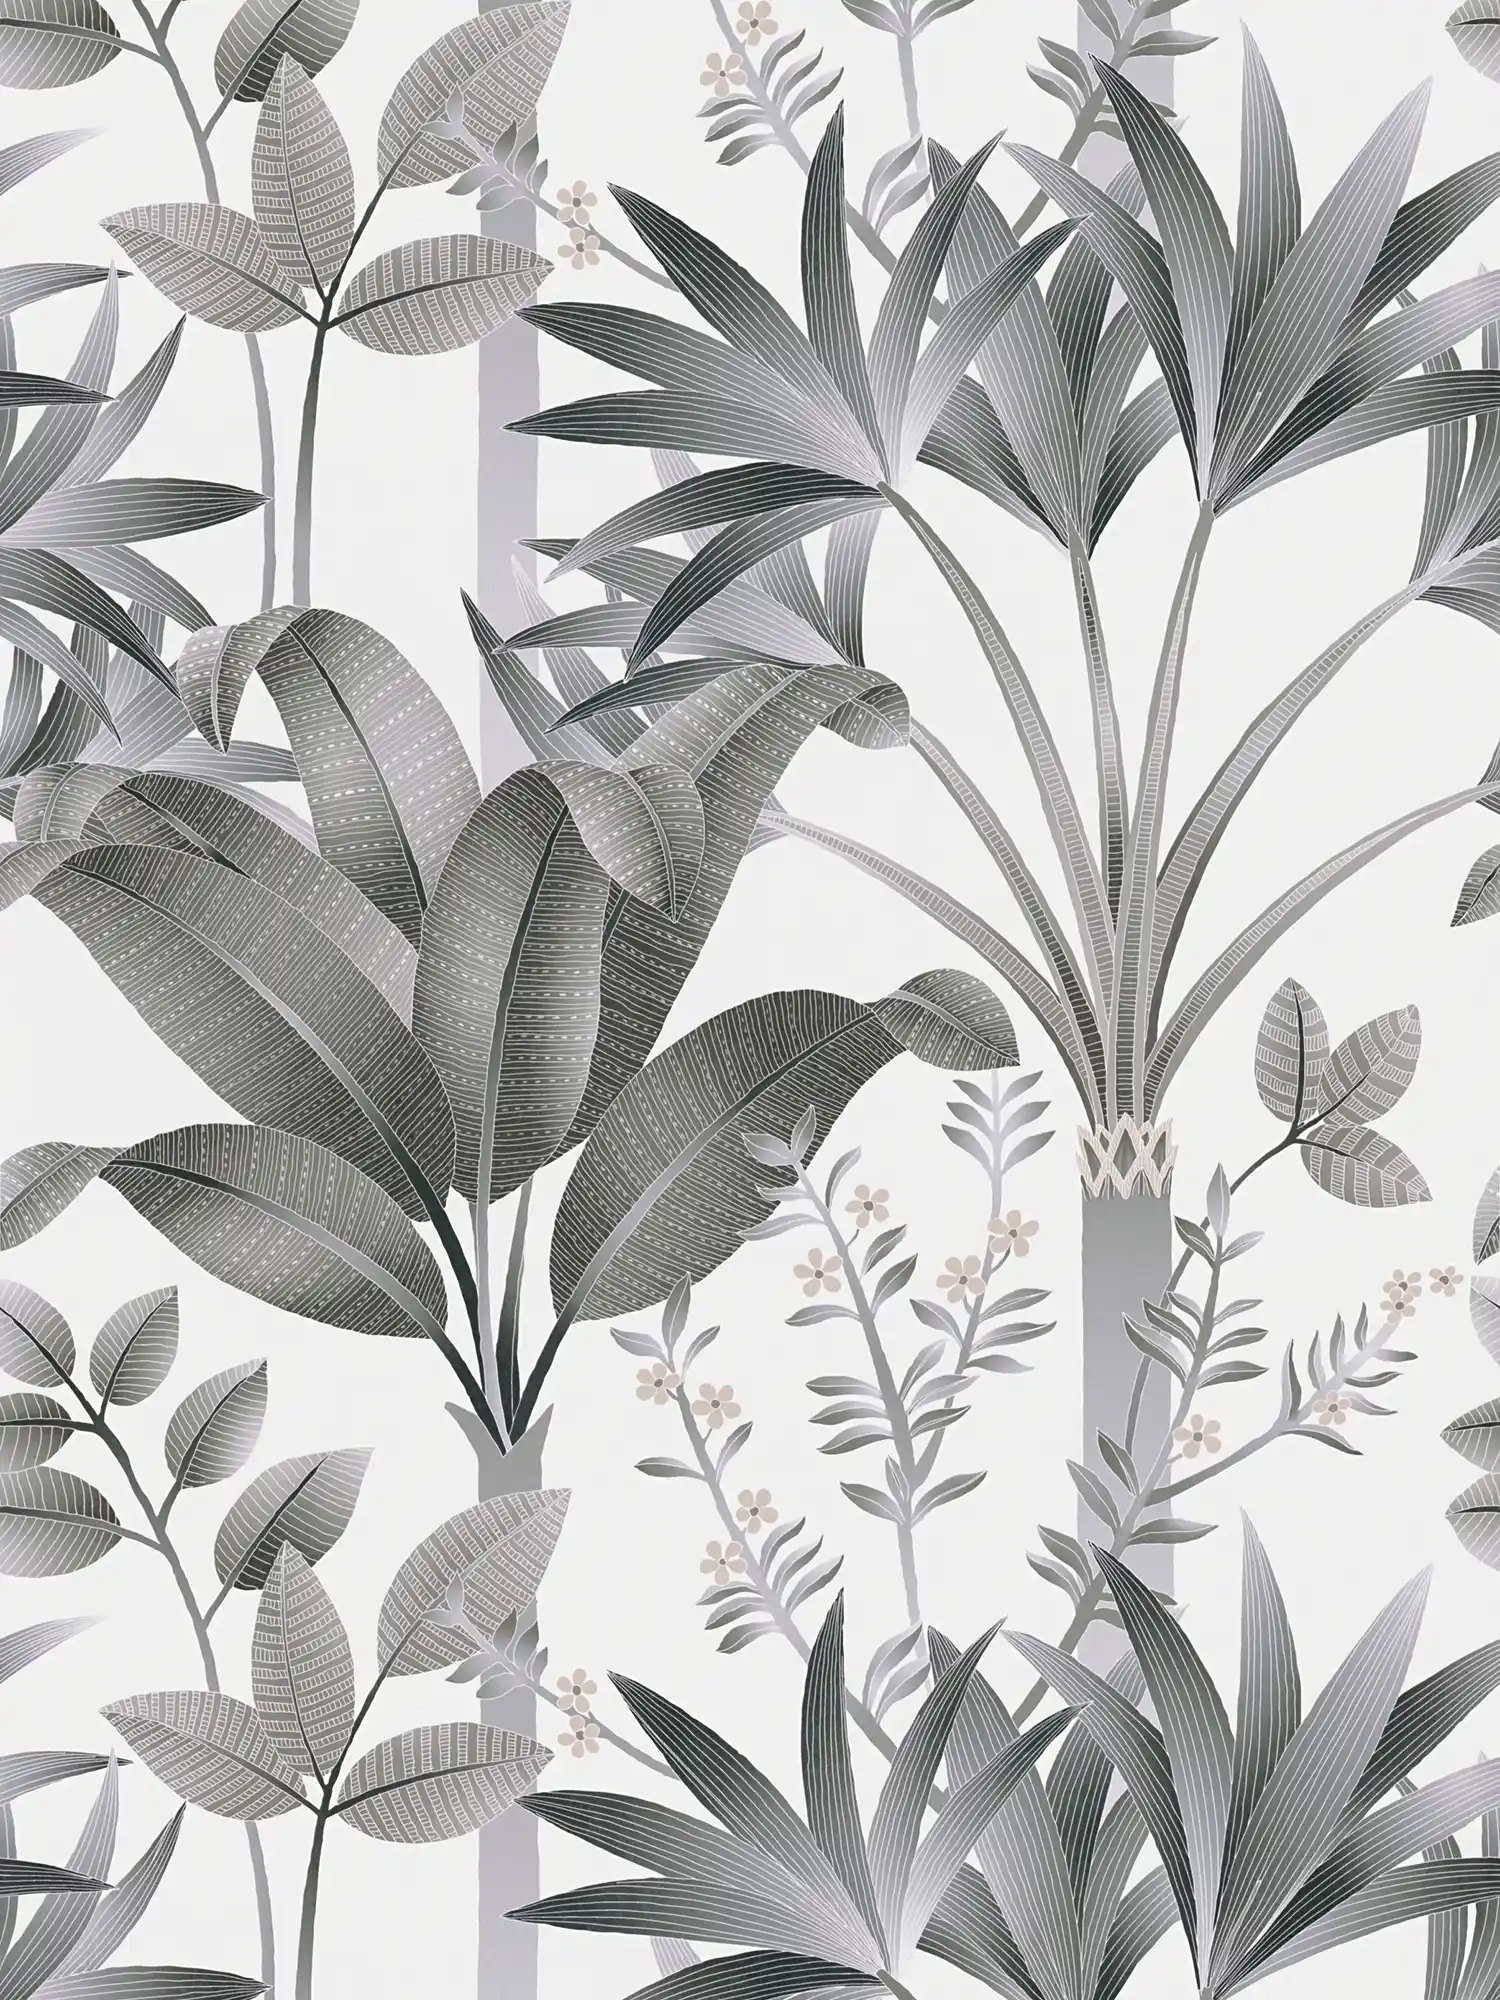 Papel pintado tejido-no tejido floral con motivo de hojas - gris, negro, blanco
